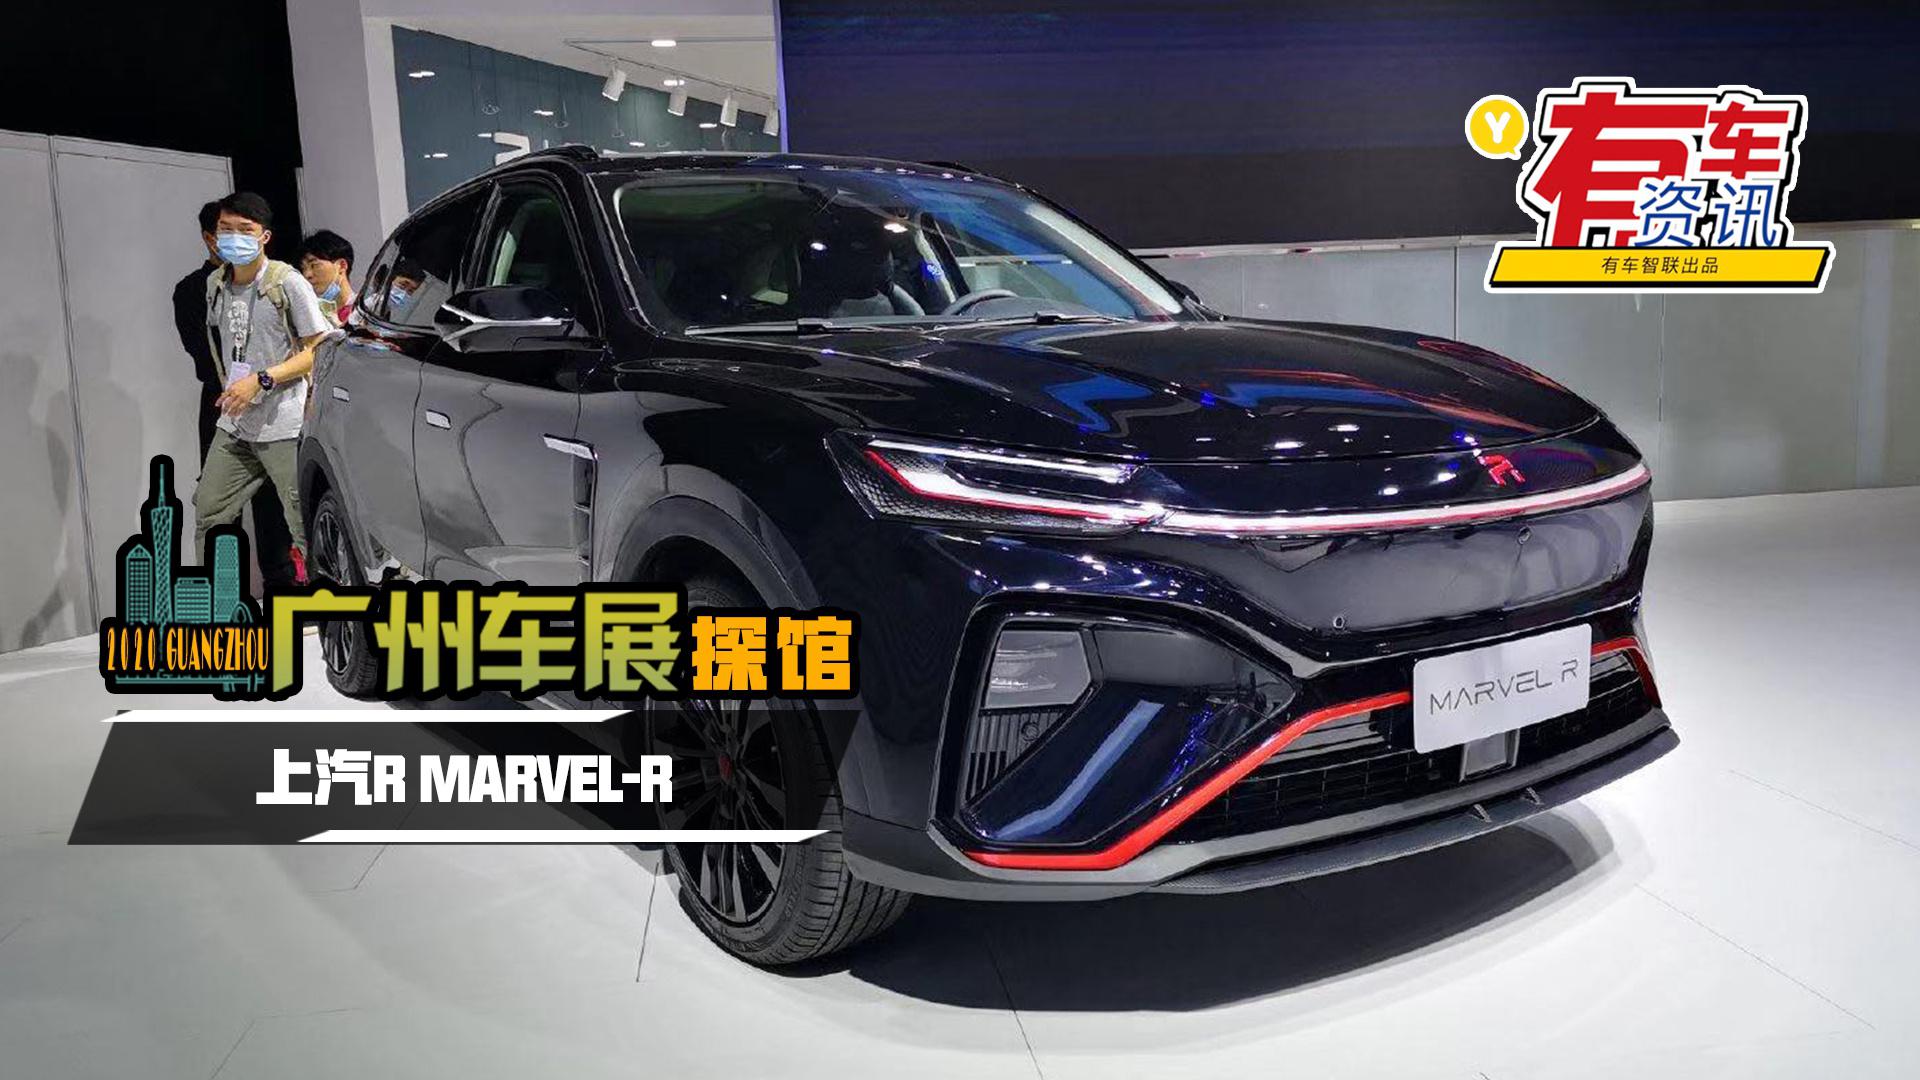 2020广州车展探馆丨定位纯电动紧凑型SUV 上汽R MARVEL-R亮相